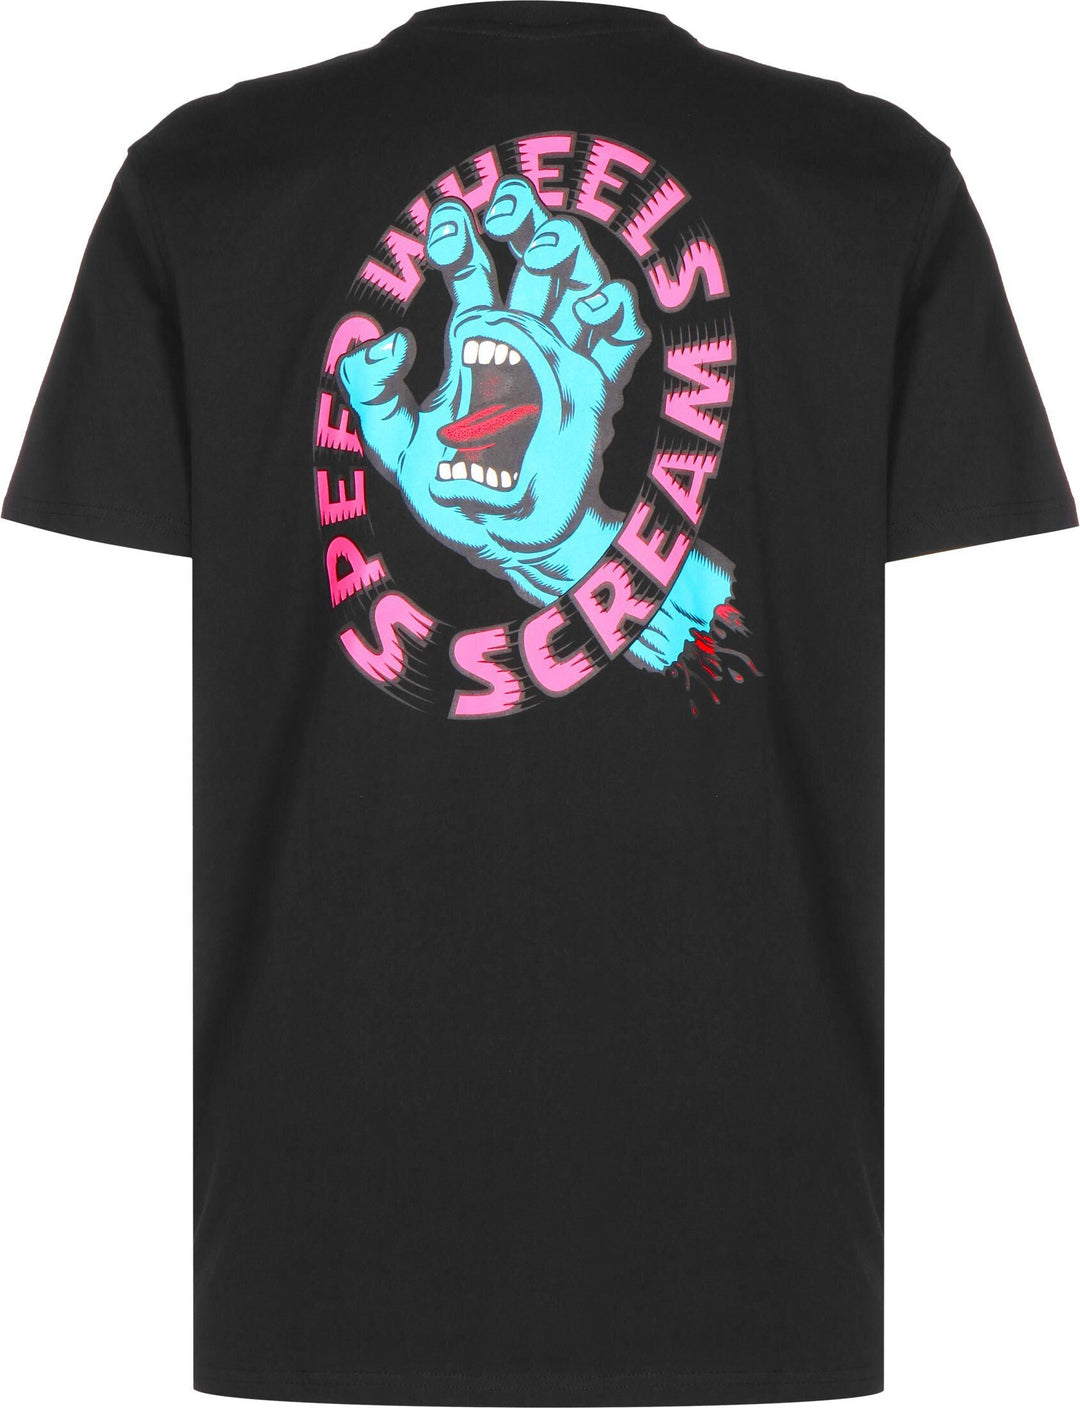 Screaming Hand Scream T-Shirt